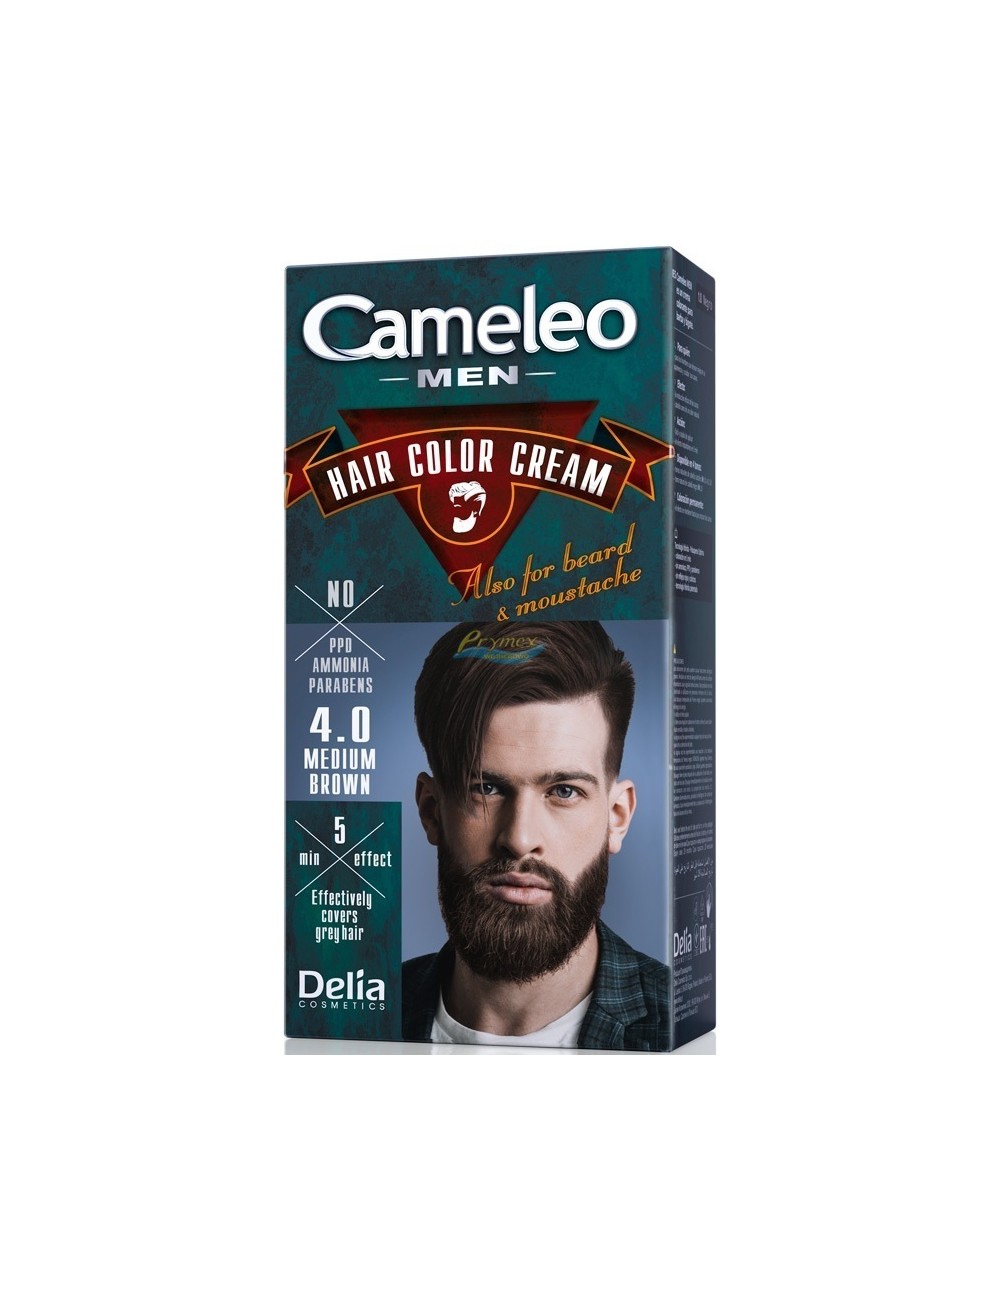 Cameleo Men Farba do Włosów i Brody dla Mężczyzn 4.0 Średni Brąz Hair Color Cream 1 szt